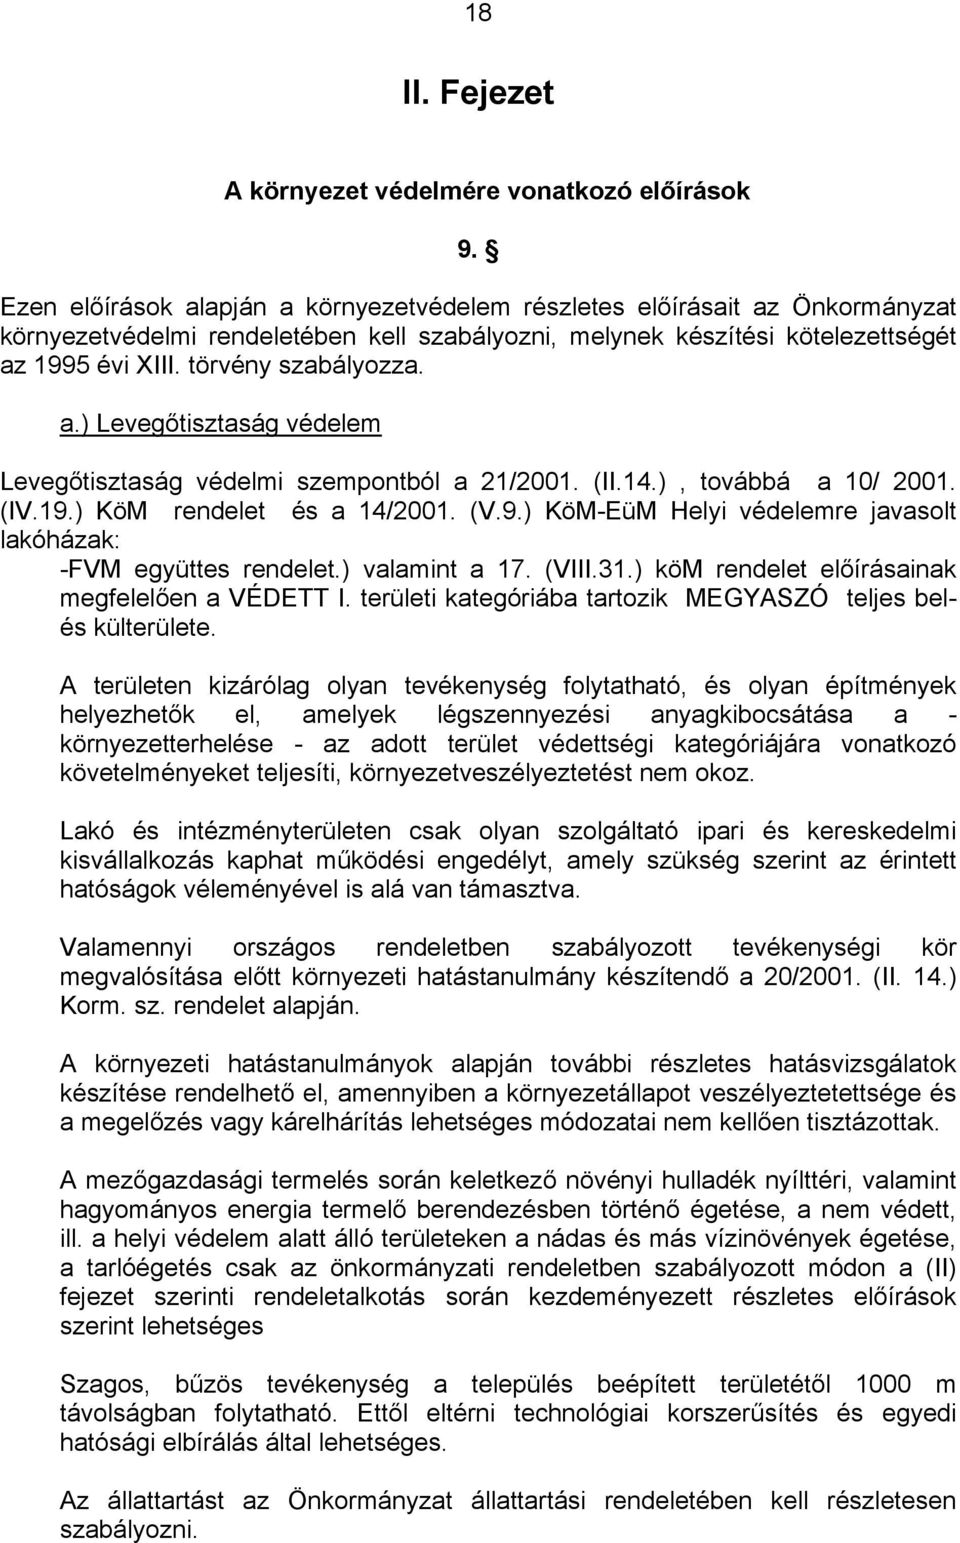 a.) Levegőtisztaság védelem Levegőtisztaság védelmi szempontból a 21/2001. (II.14.), továbbá a 10/ 2001. (IV.19.) KöM rendelet és a 14/2001. (V.9.) KöM-EüM Helyi védelemre javasolt lakóházak: -FVM együttes rendelet.